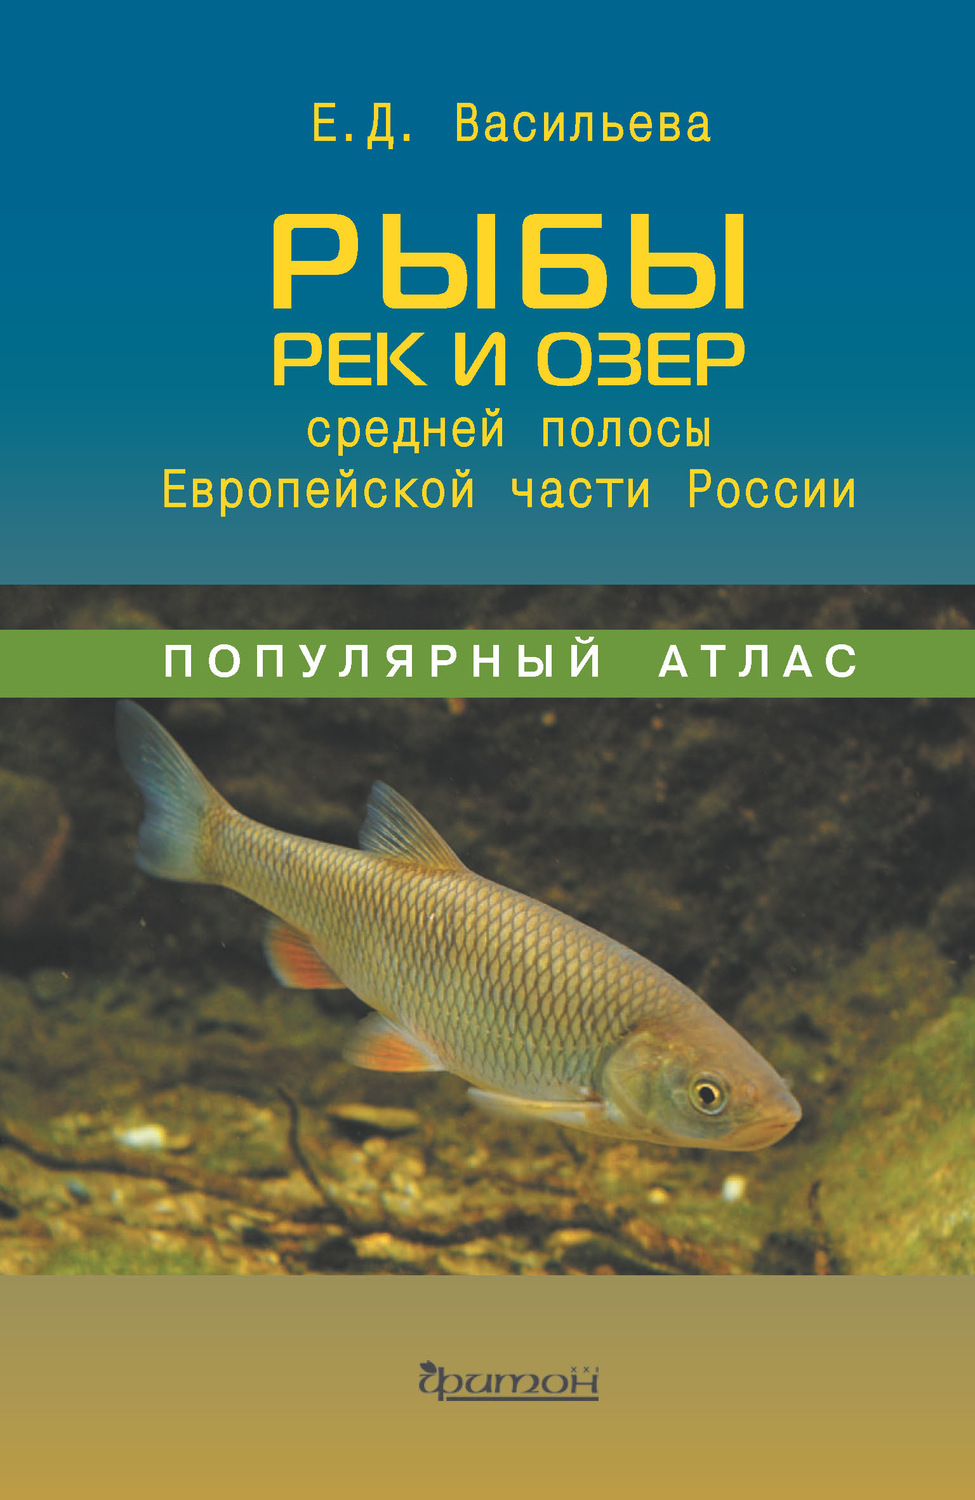 Рыба книги купить. Книги про рыб. Атлас рыб. Рыбы России книга. Рыбы средней полосы.